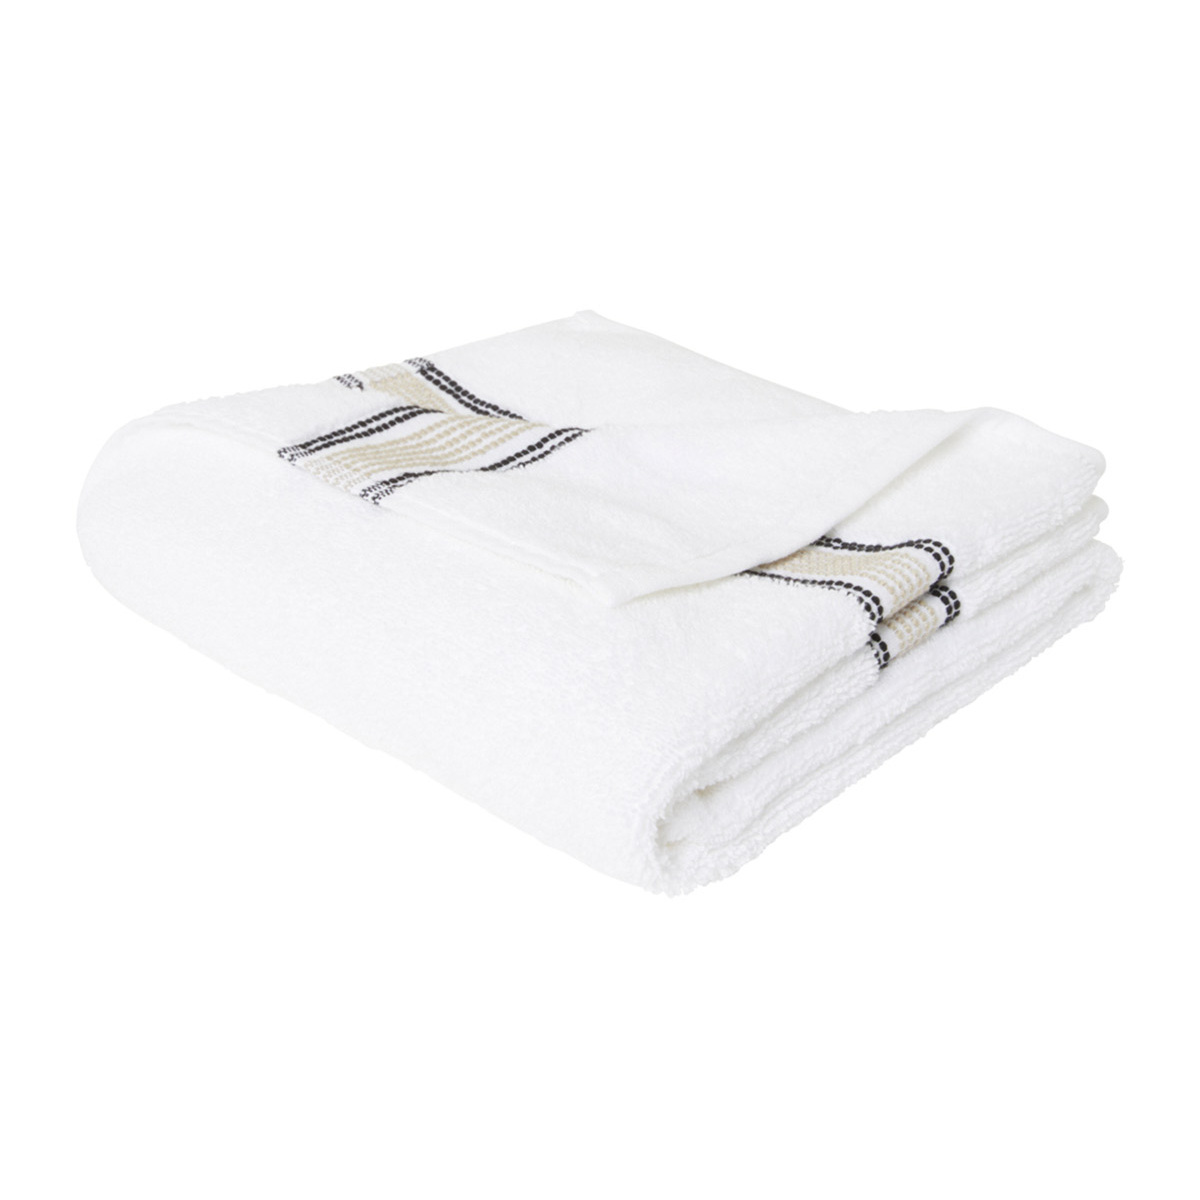 Towel Sicilia, Linen - L30 x W50 cm - Organic cotton - image 1